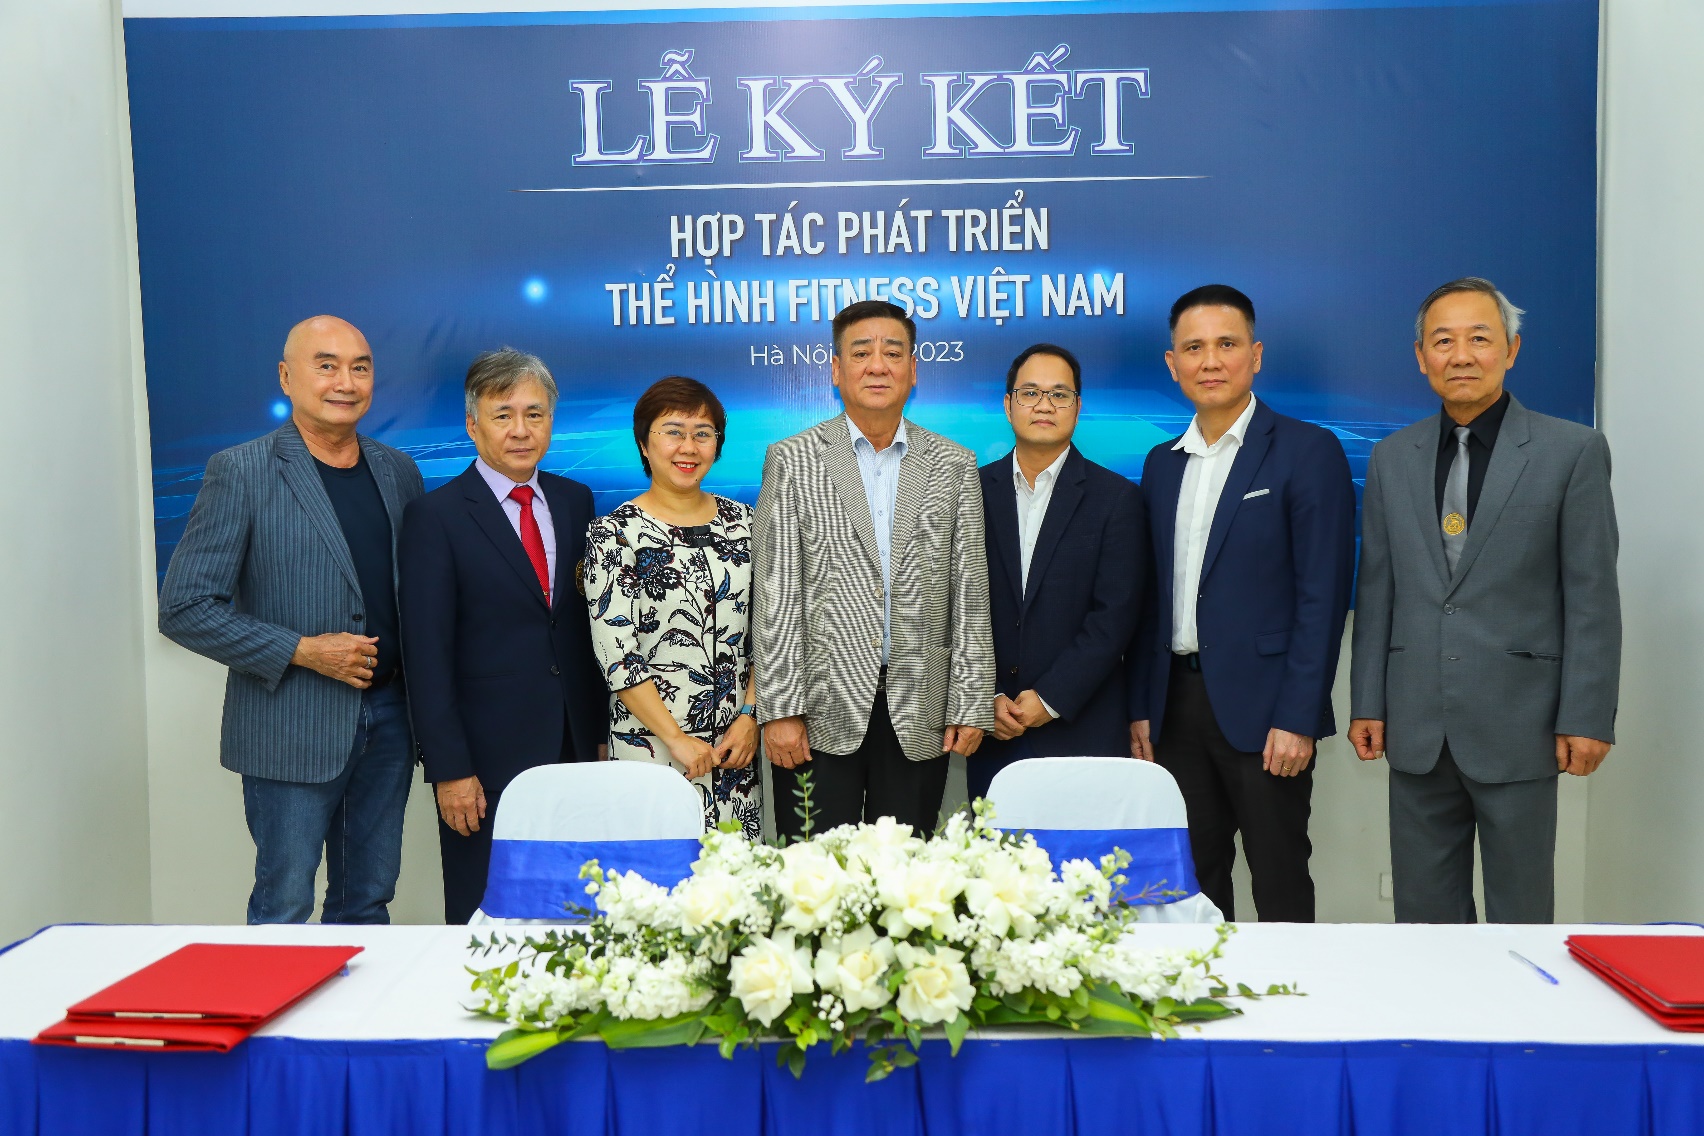 Liên đoàn Cử tạ Thể hình Việt Nam ký kết hợp tác với doanh nghiệp để thúc đẩy Thể hình Fitness - Ảnh 1.